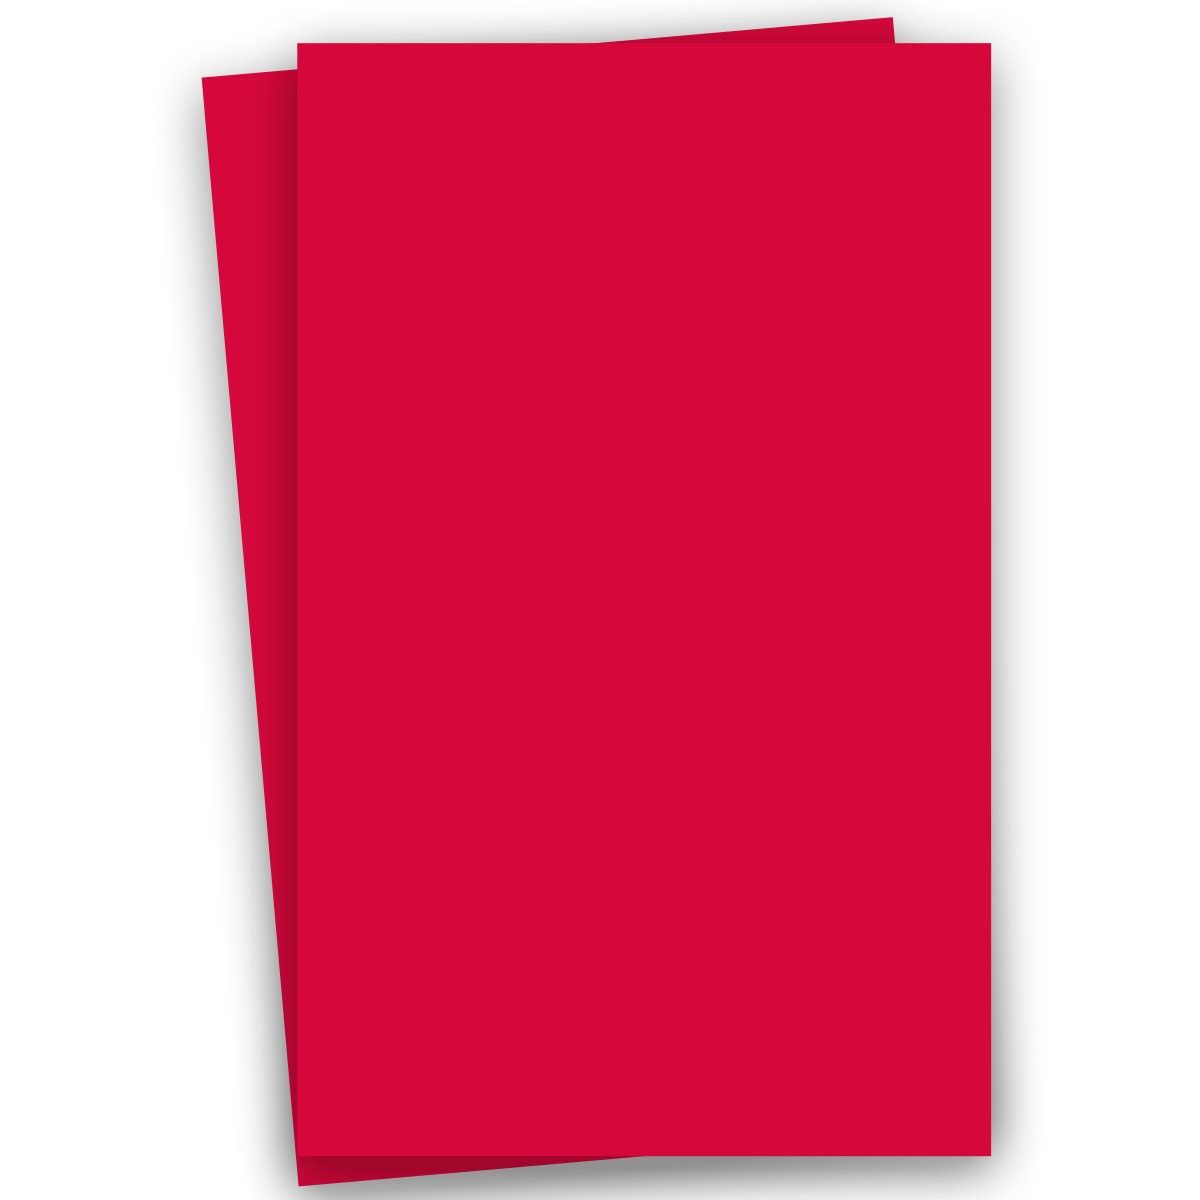 Plike (Plastic-Like) Paper - 8.5 x 11 - RED - 122LB COVER - 25 PK